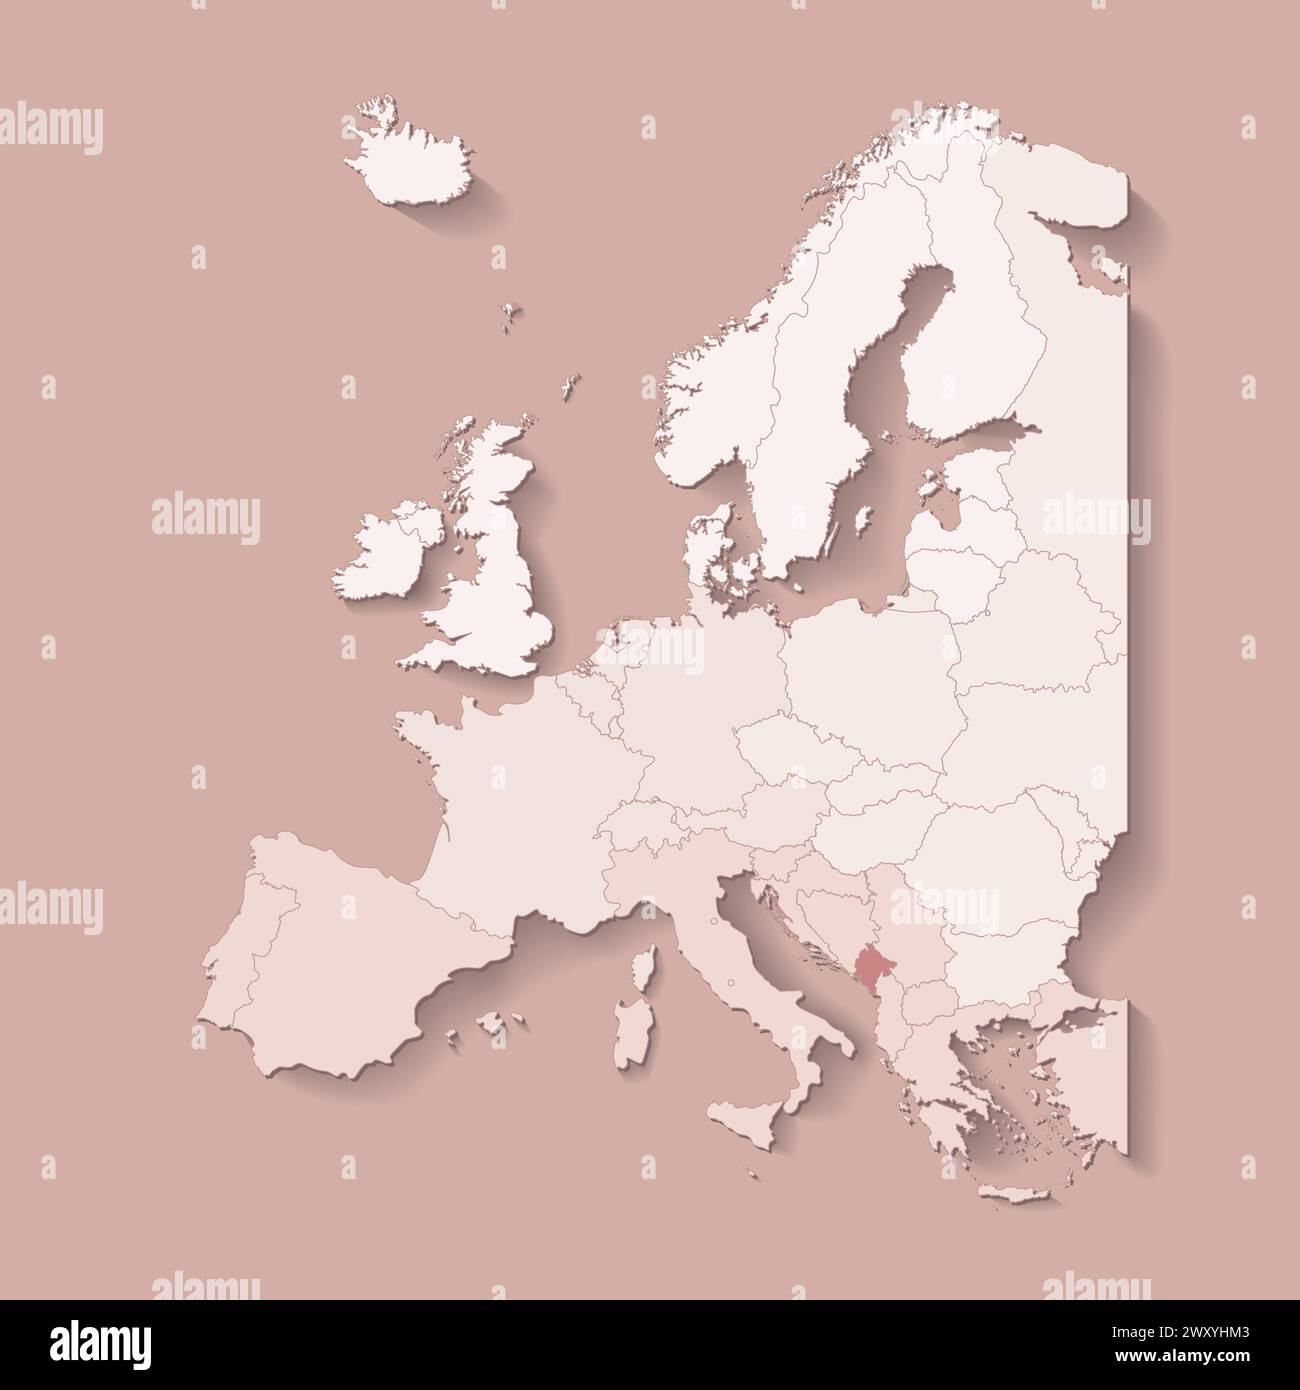 Vektor-Illustration mit europäischem Land mit Grenzen von staaten und markiertem Land Montenegro. Politische Karte in braunen Farben mit West, Süd und etc Stock Vektor